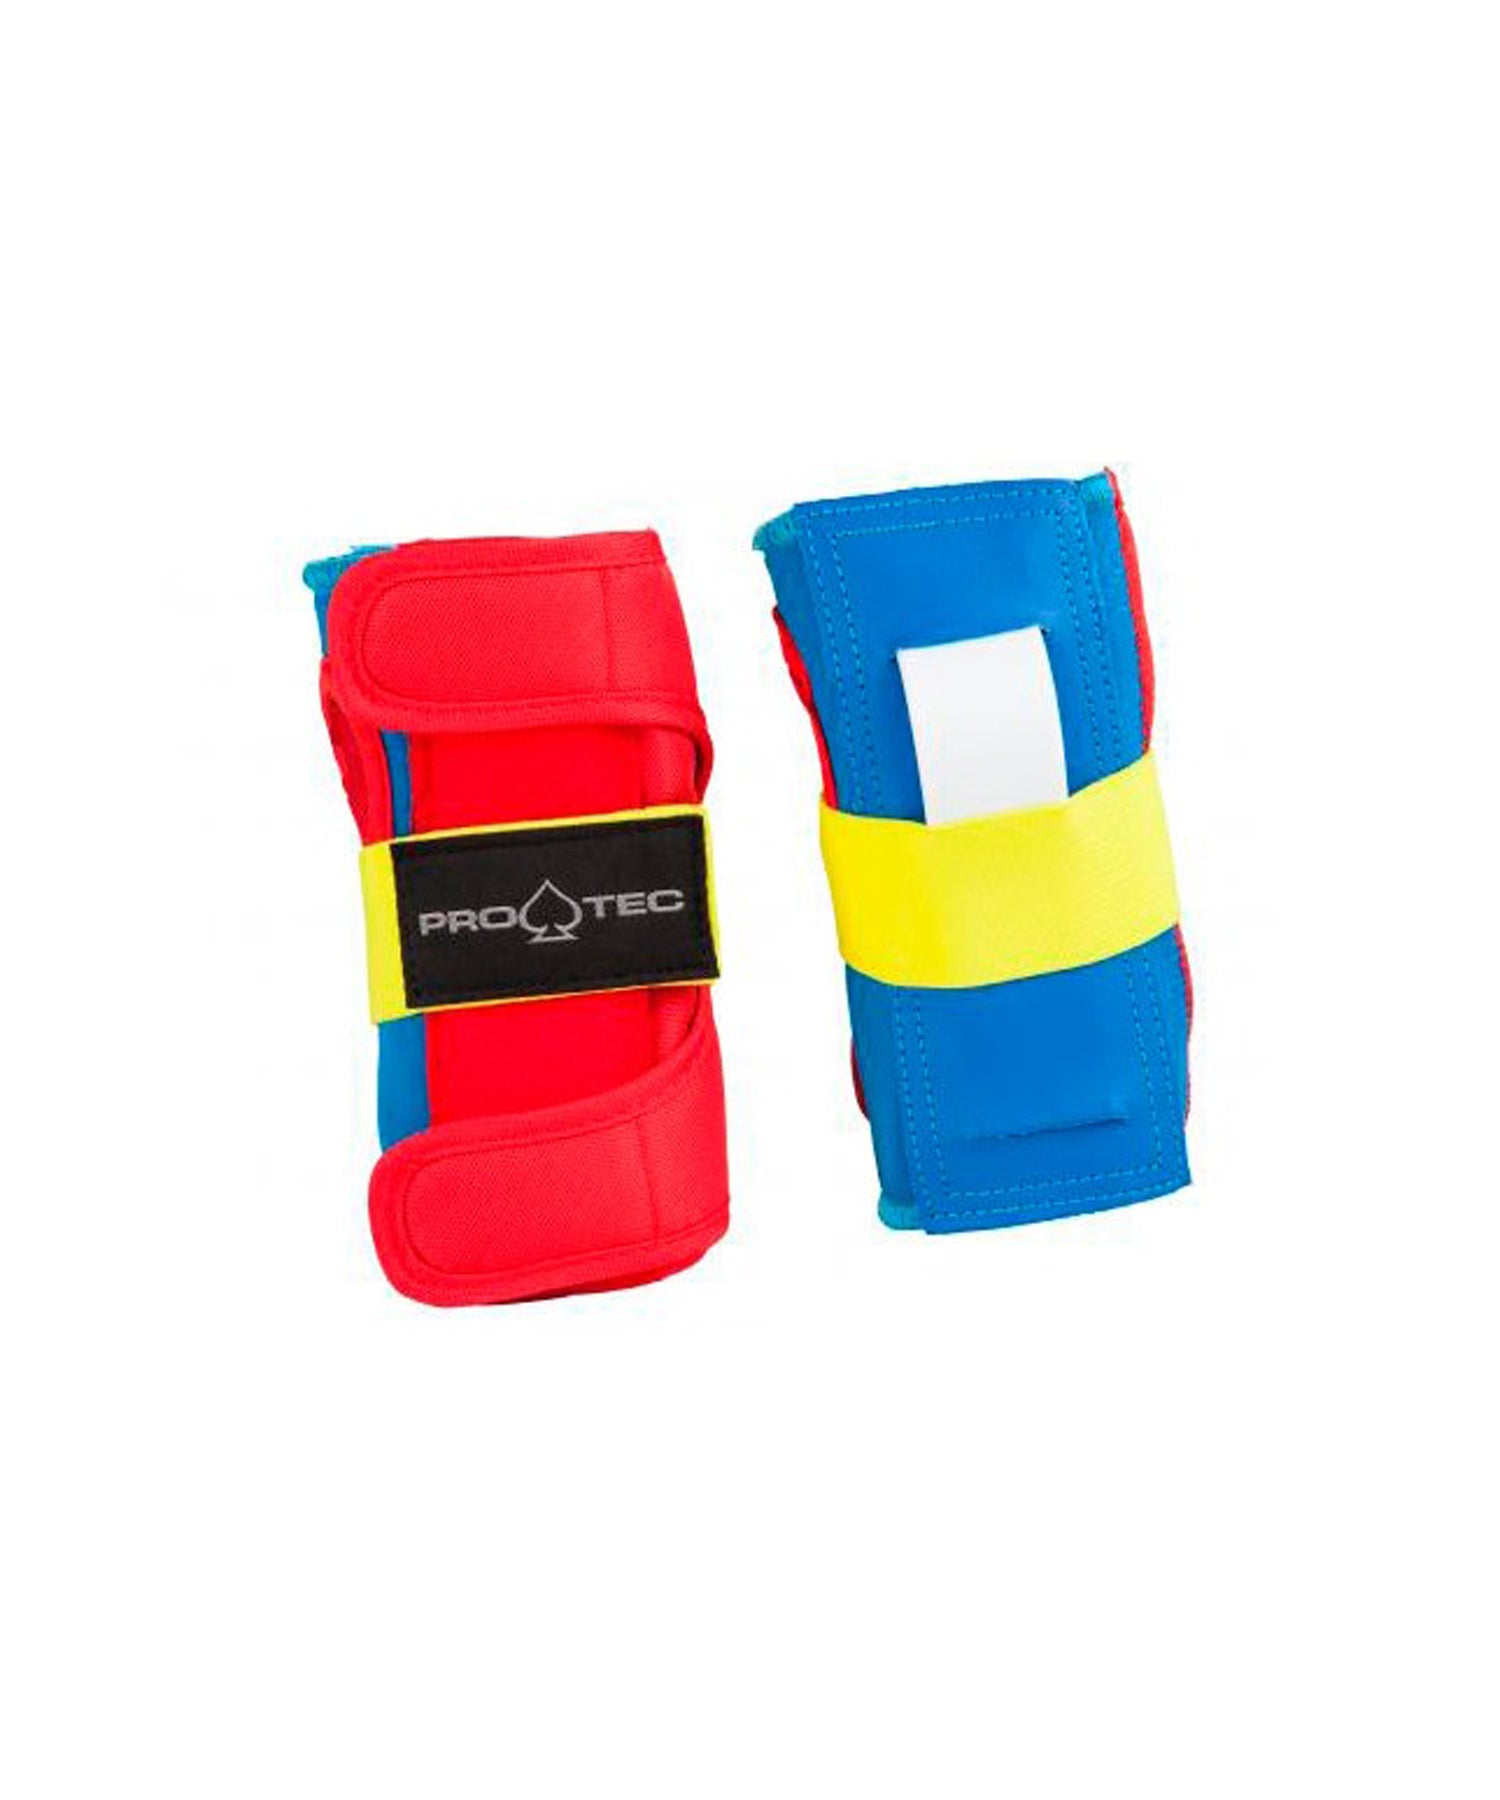 pack-protecciones-pro-tec-junior-retro-3-pack-varios-colores-materiales-de primera-calidad-protección-sin-restringir movimiento